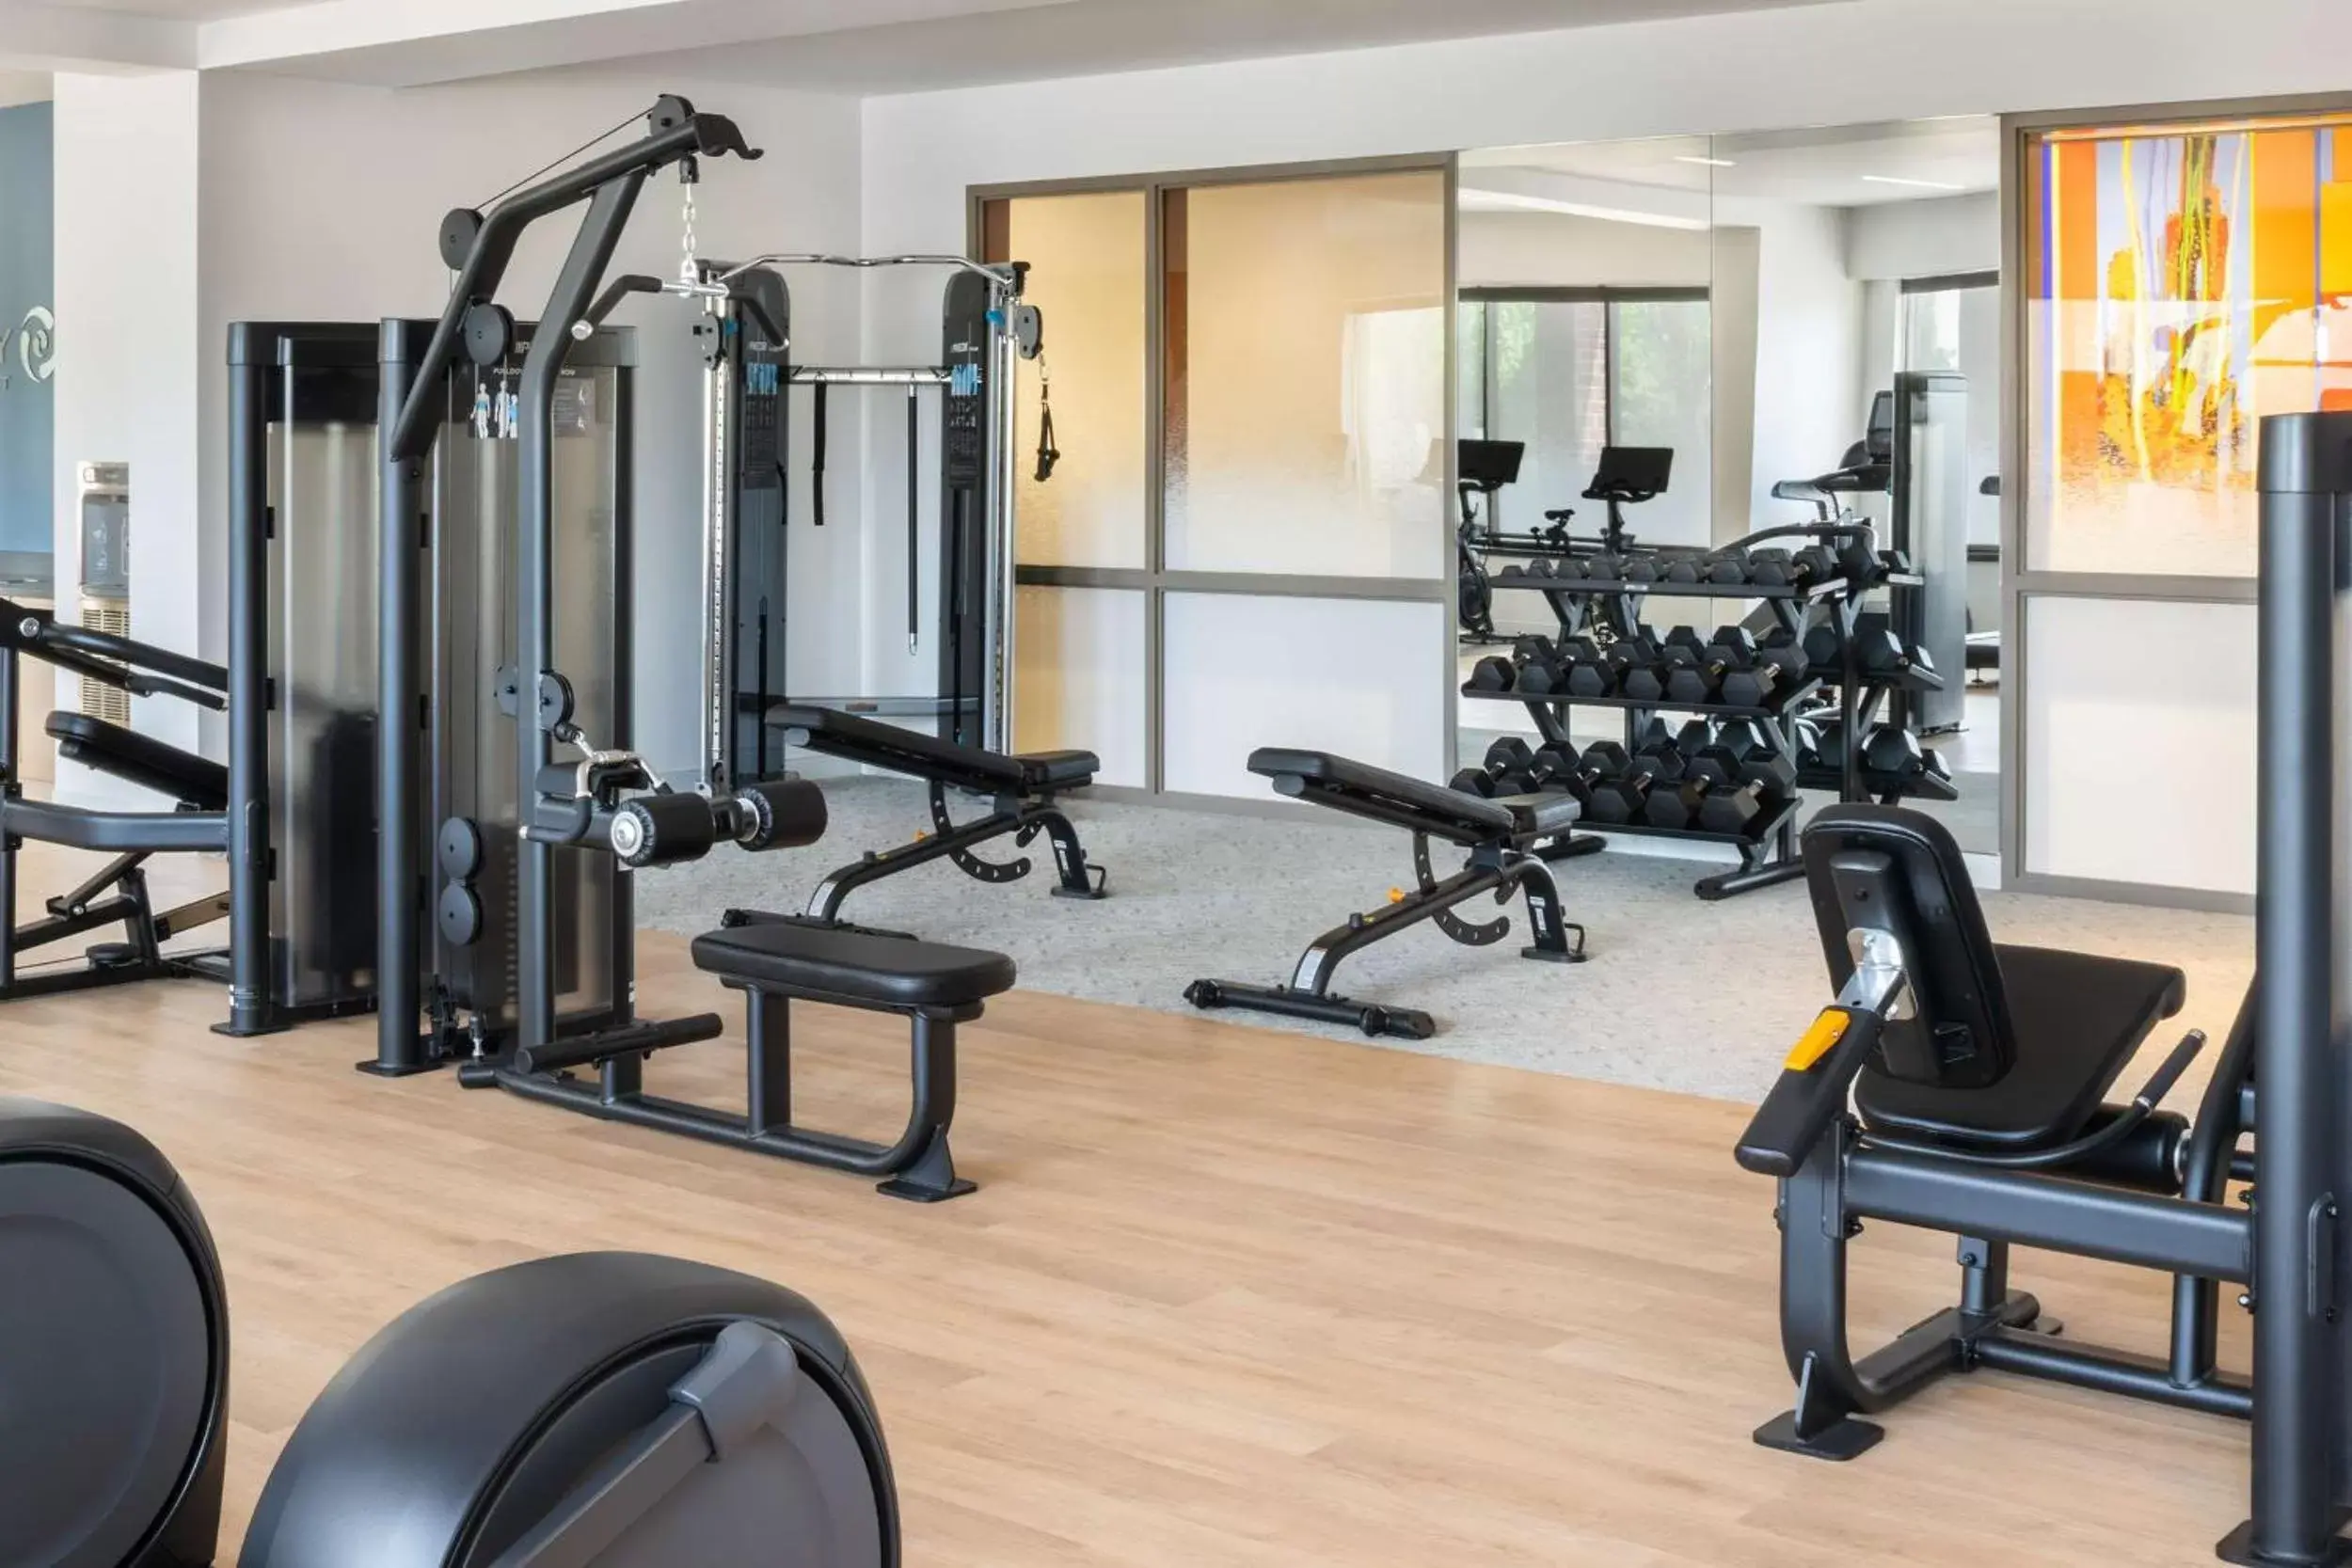 Fitness centre/facilities, Fitness Center/Facilities in Hyatt Regency Coralville